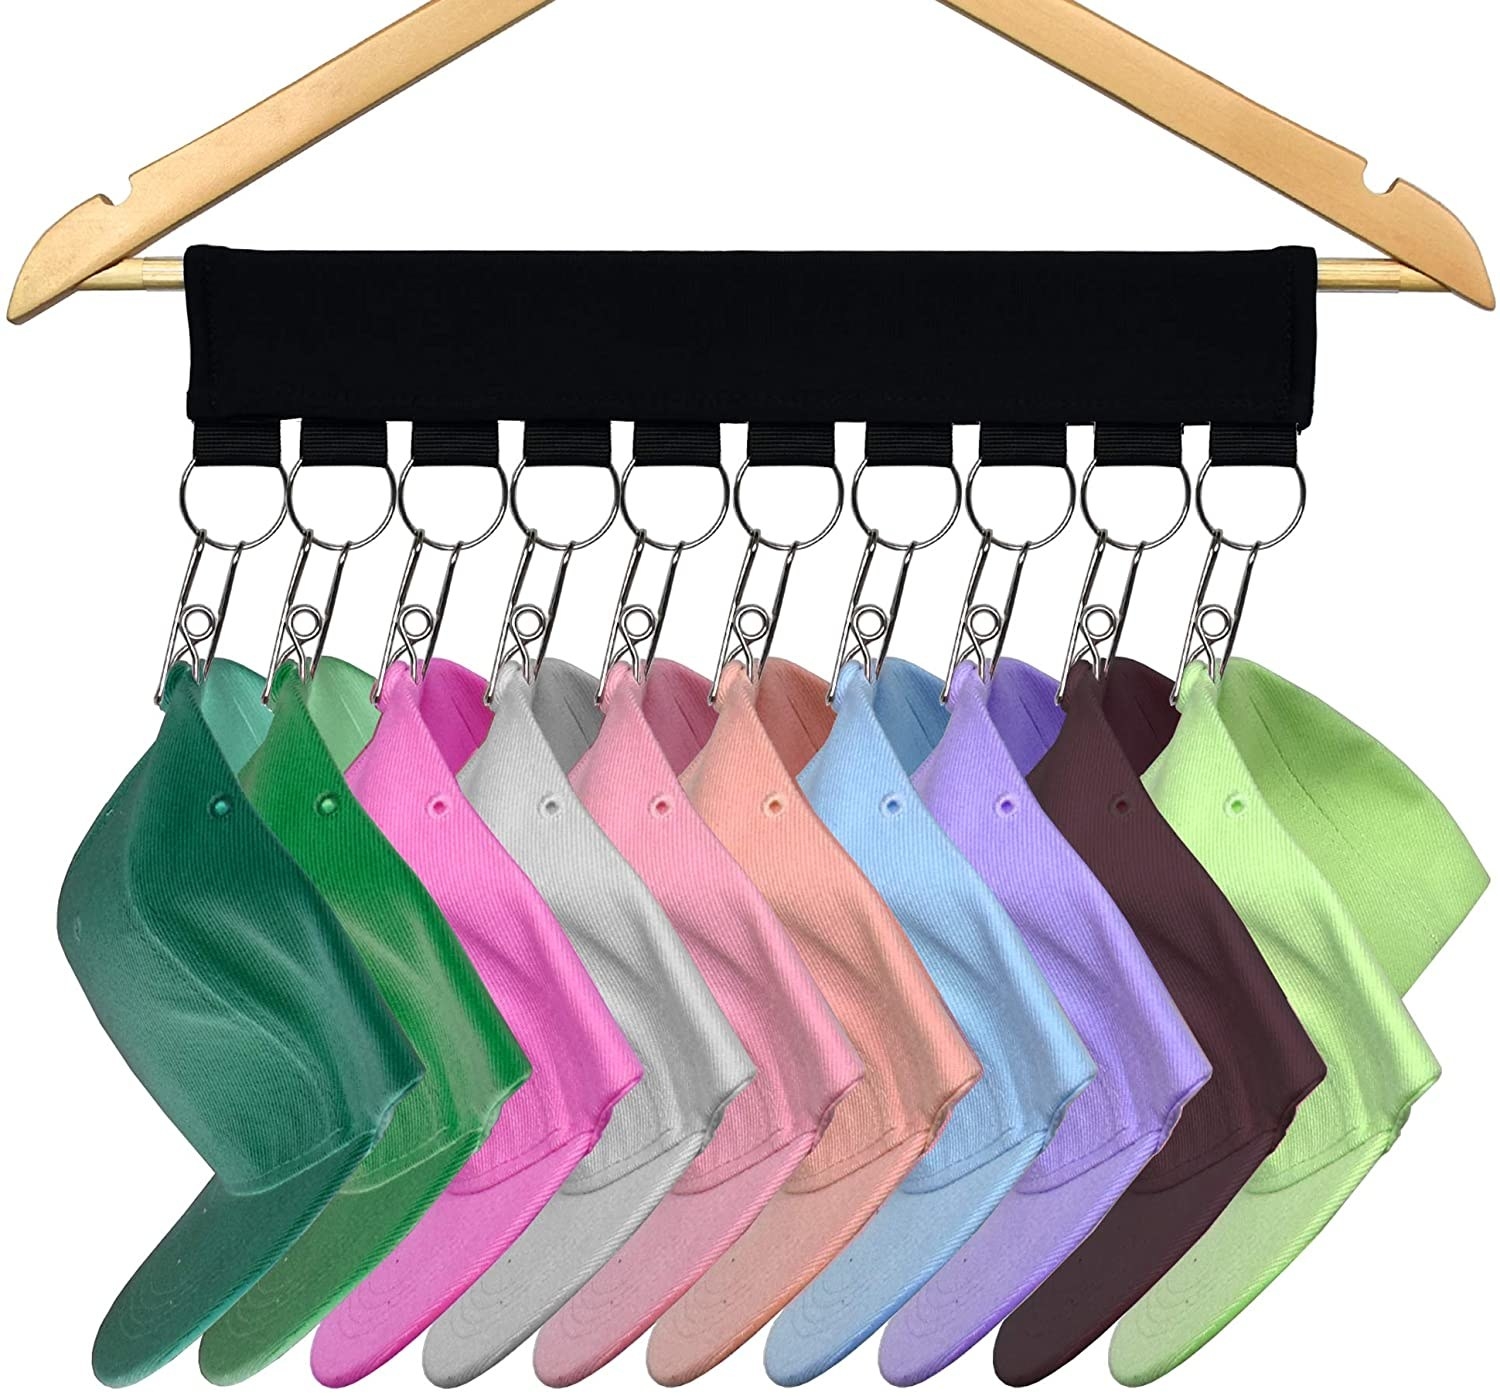 coat hangers with hooks for holding baseball caps